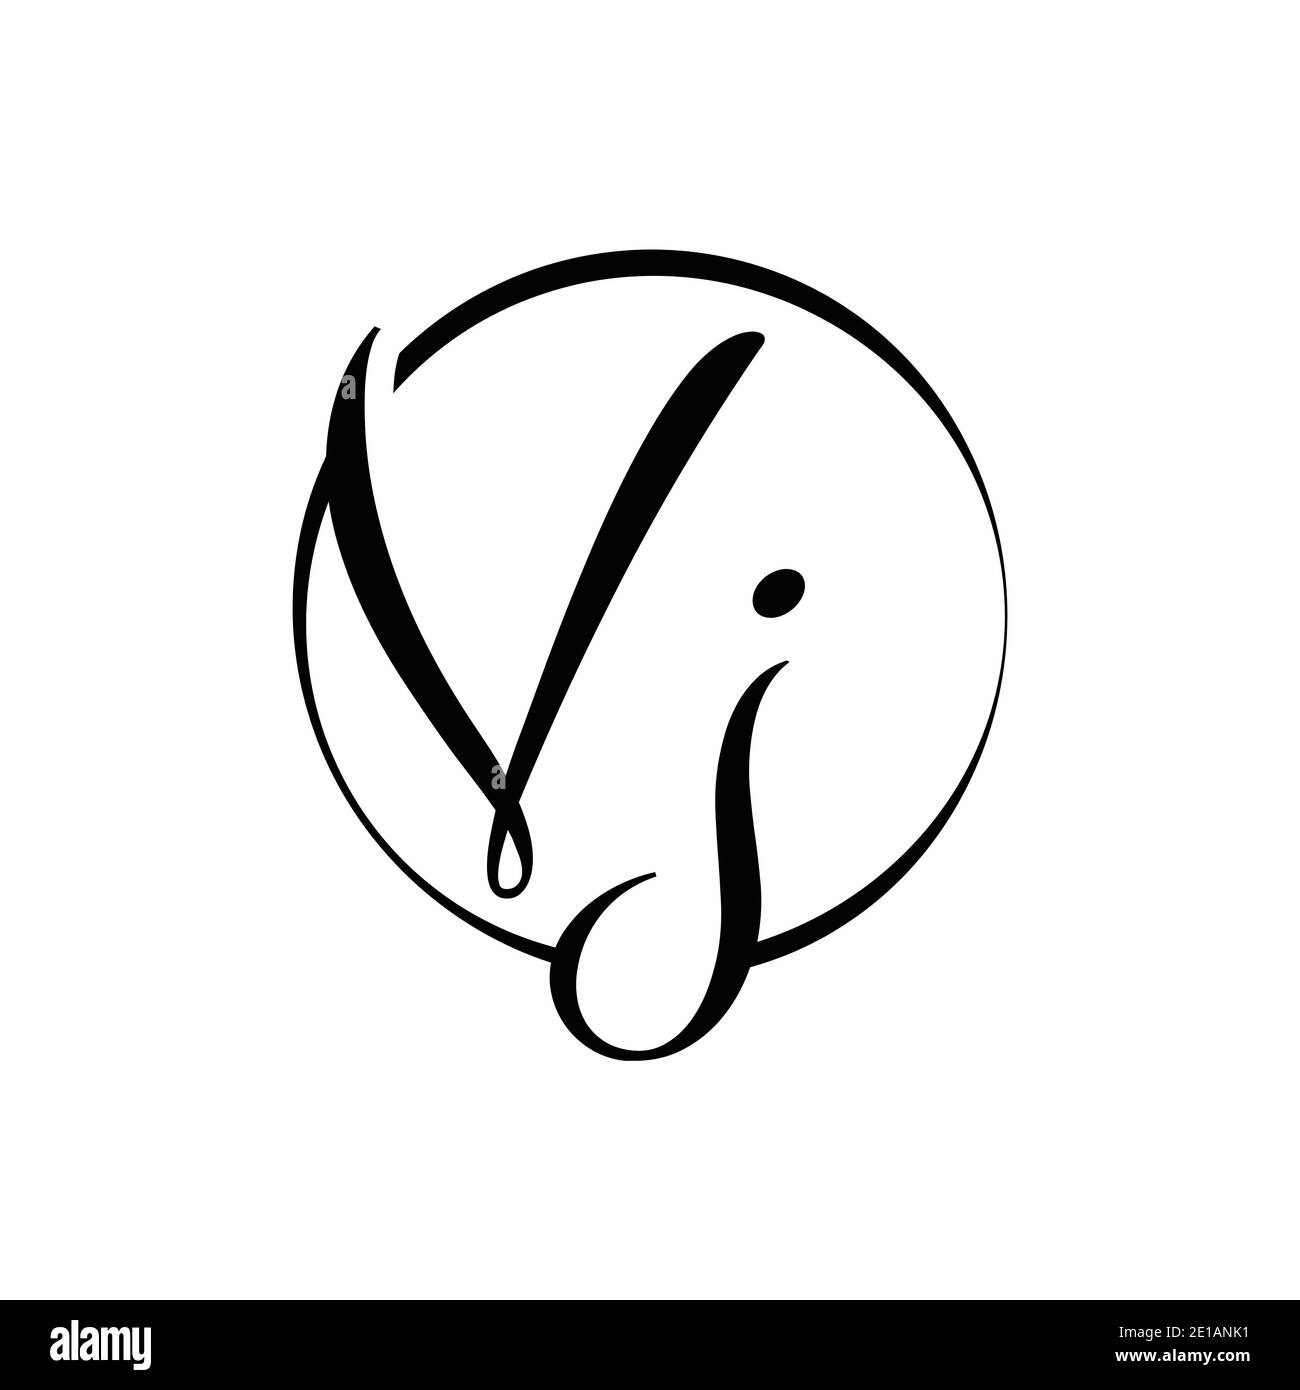 VJ Logos | VJ Logo Maker | BrandCrowd